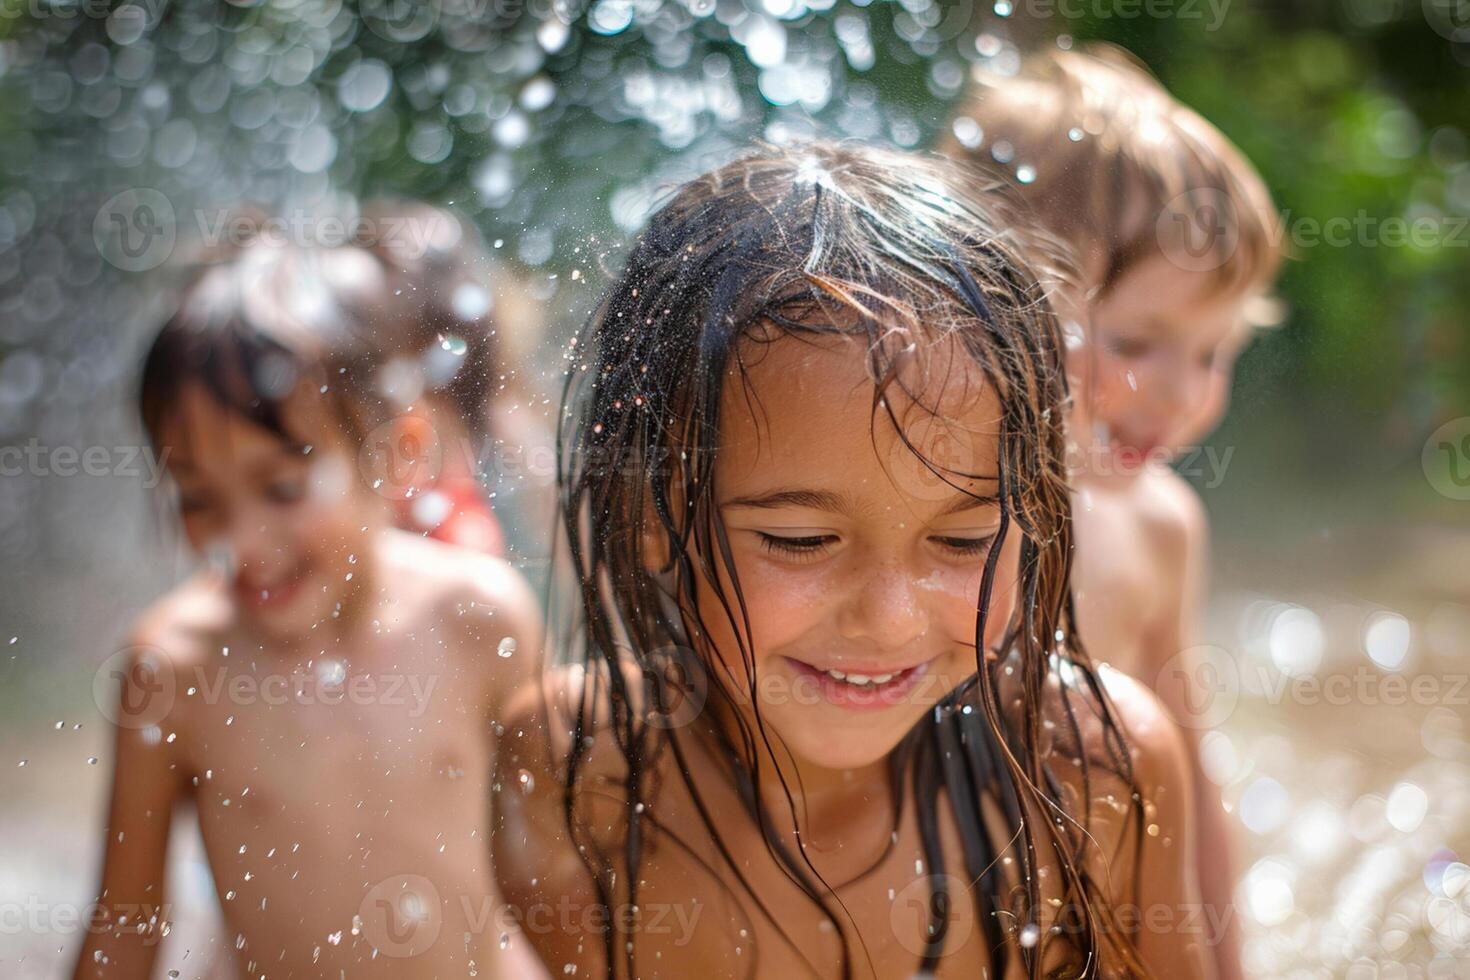 grupp av barn spelar i en sprinkler till fly de värme, glad stänk på en varm dag foto